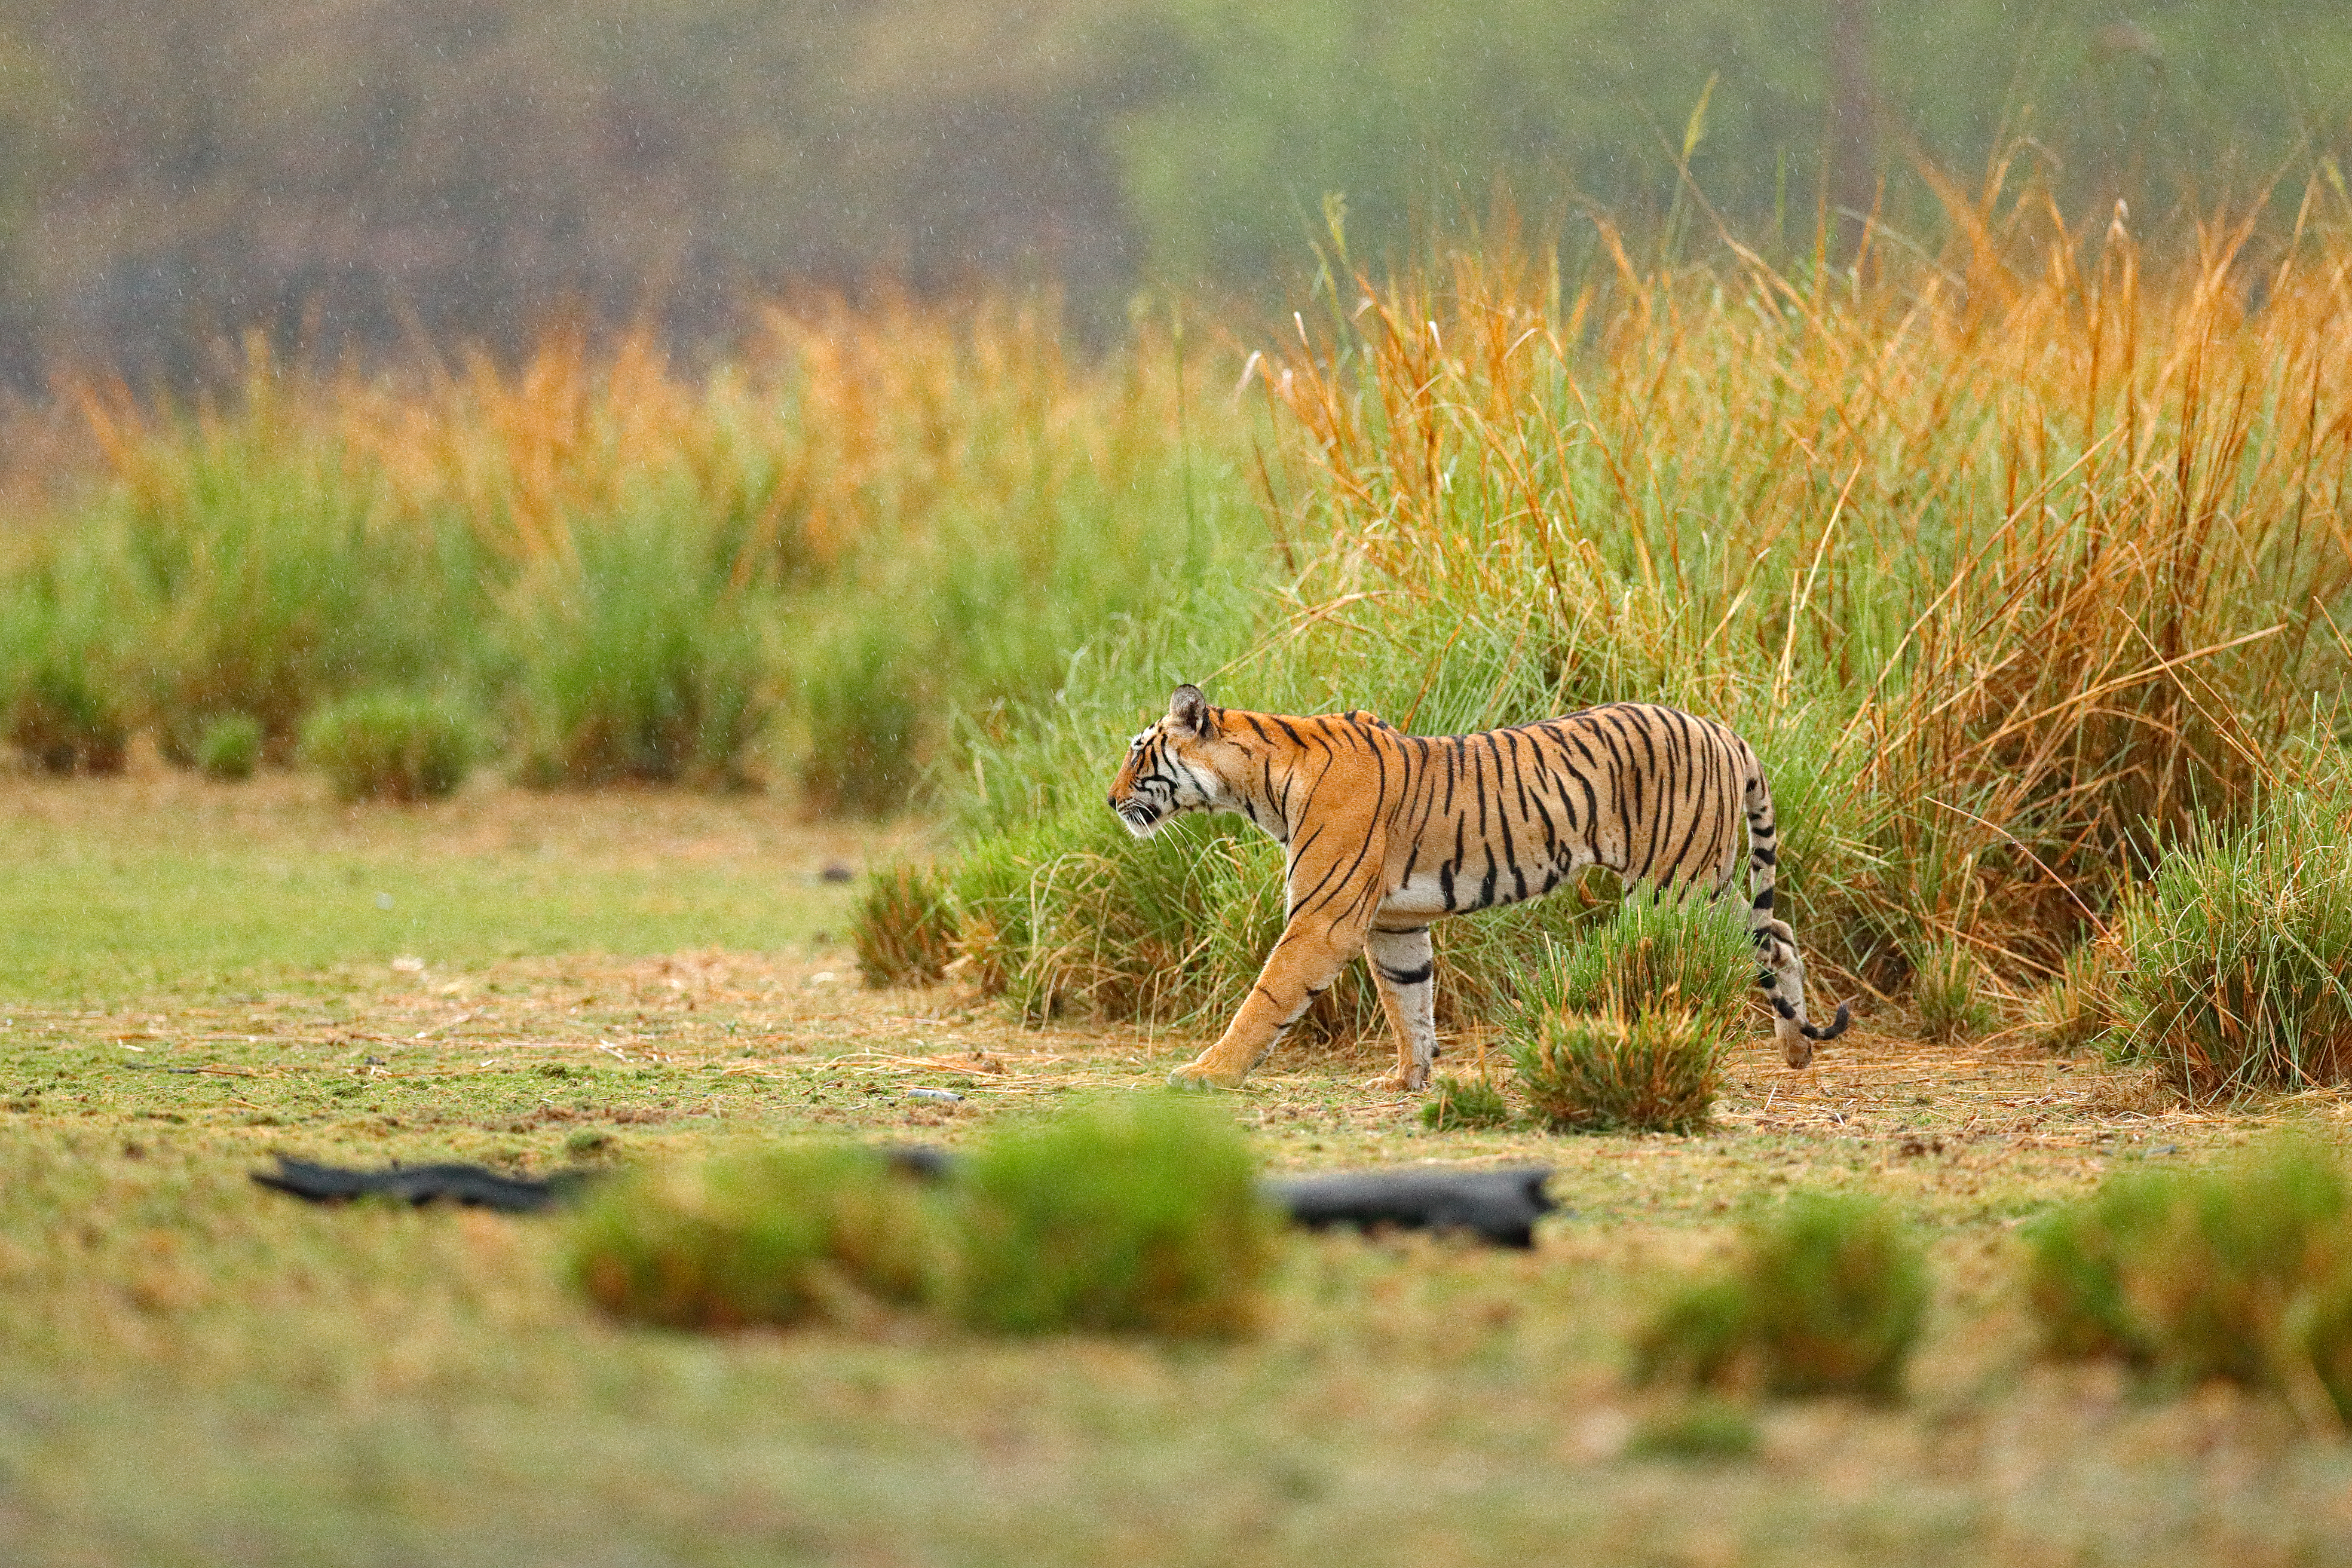 Wildlife in danger. Dangerous animals in India photo.